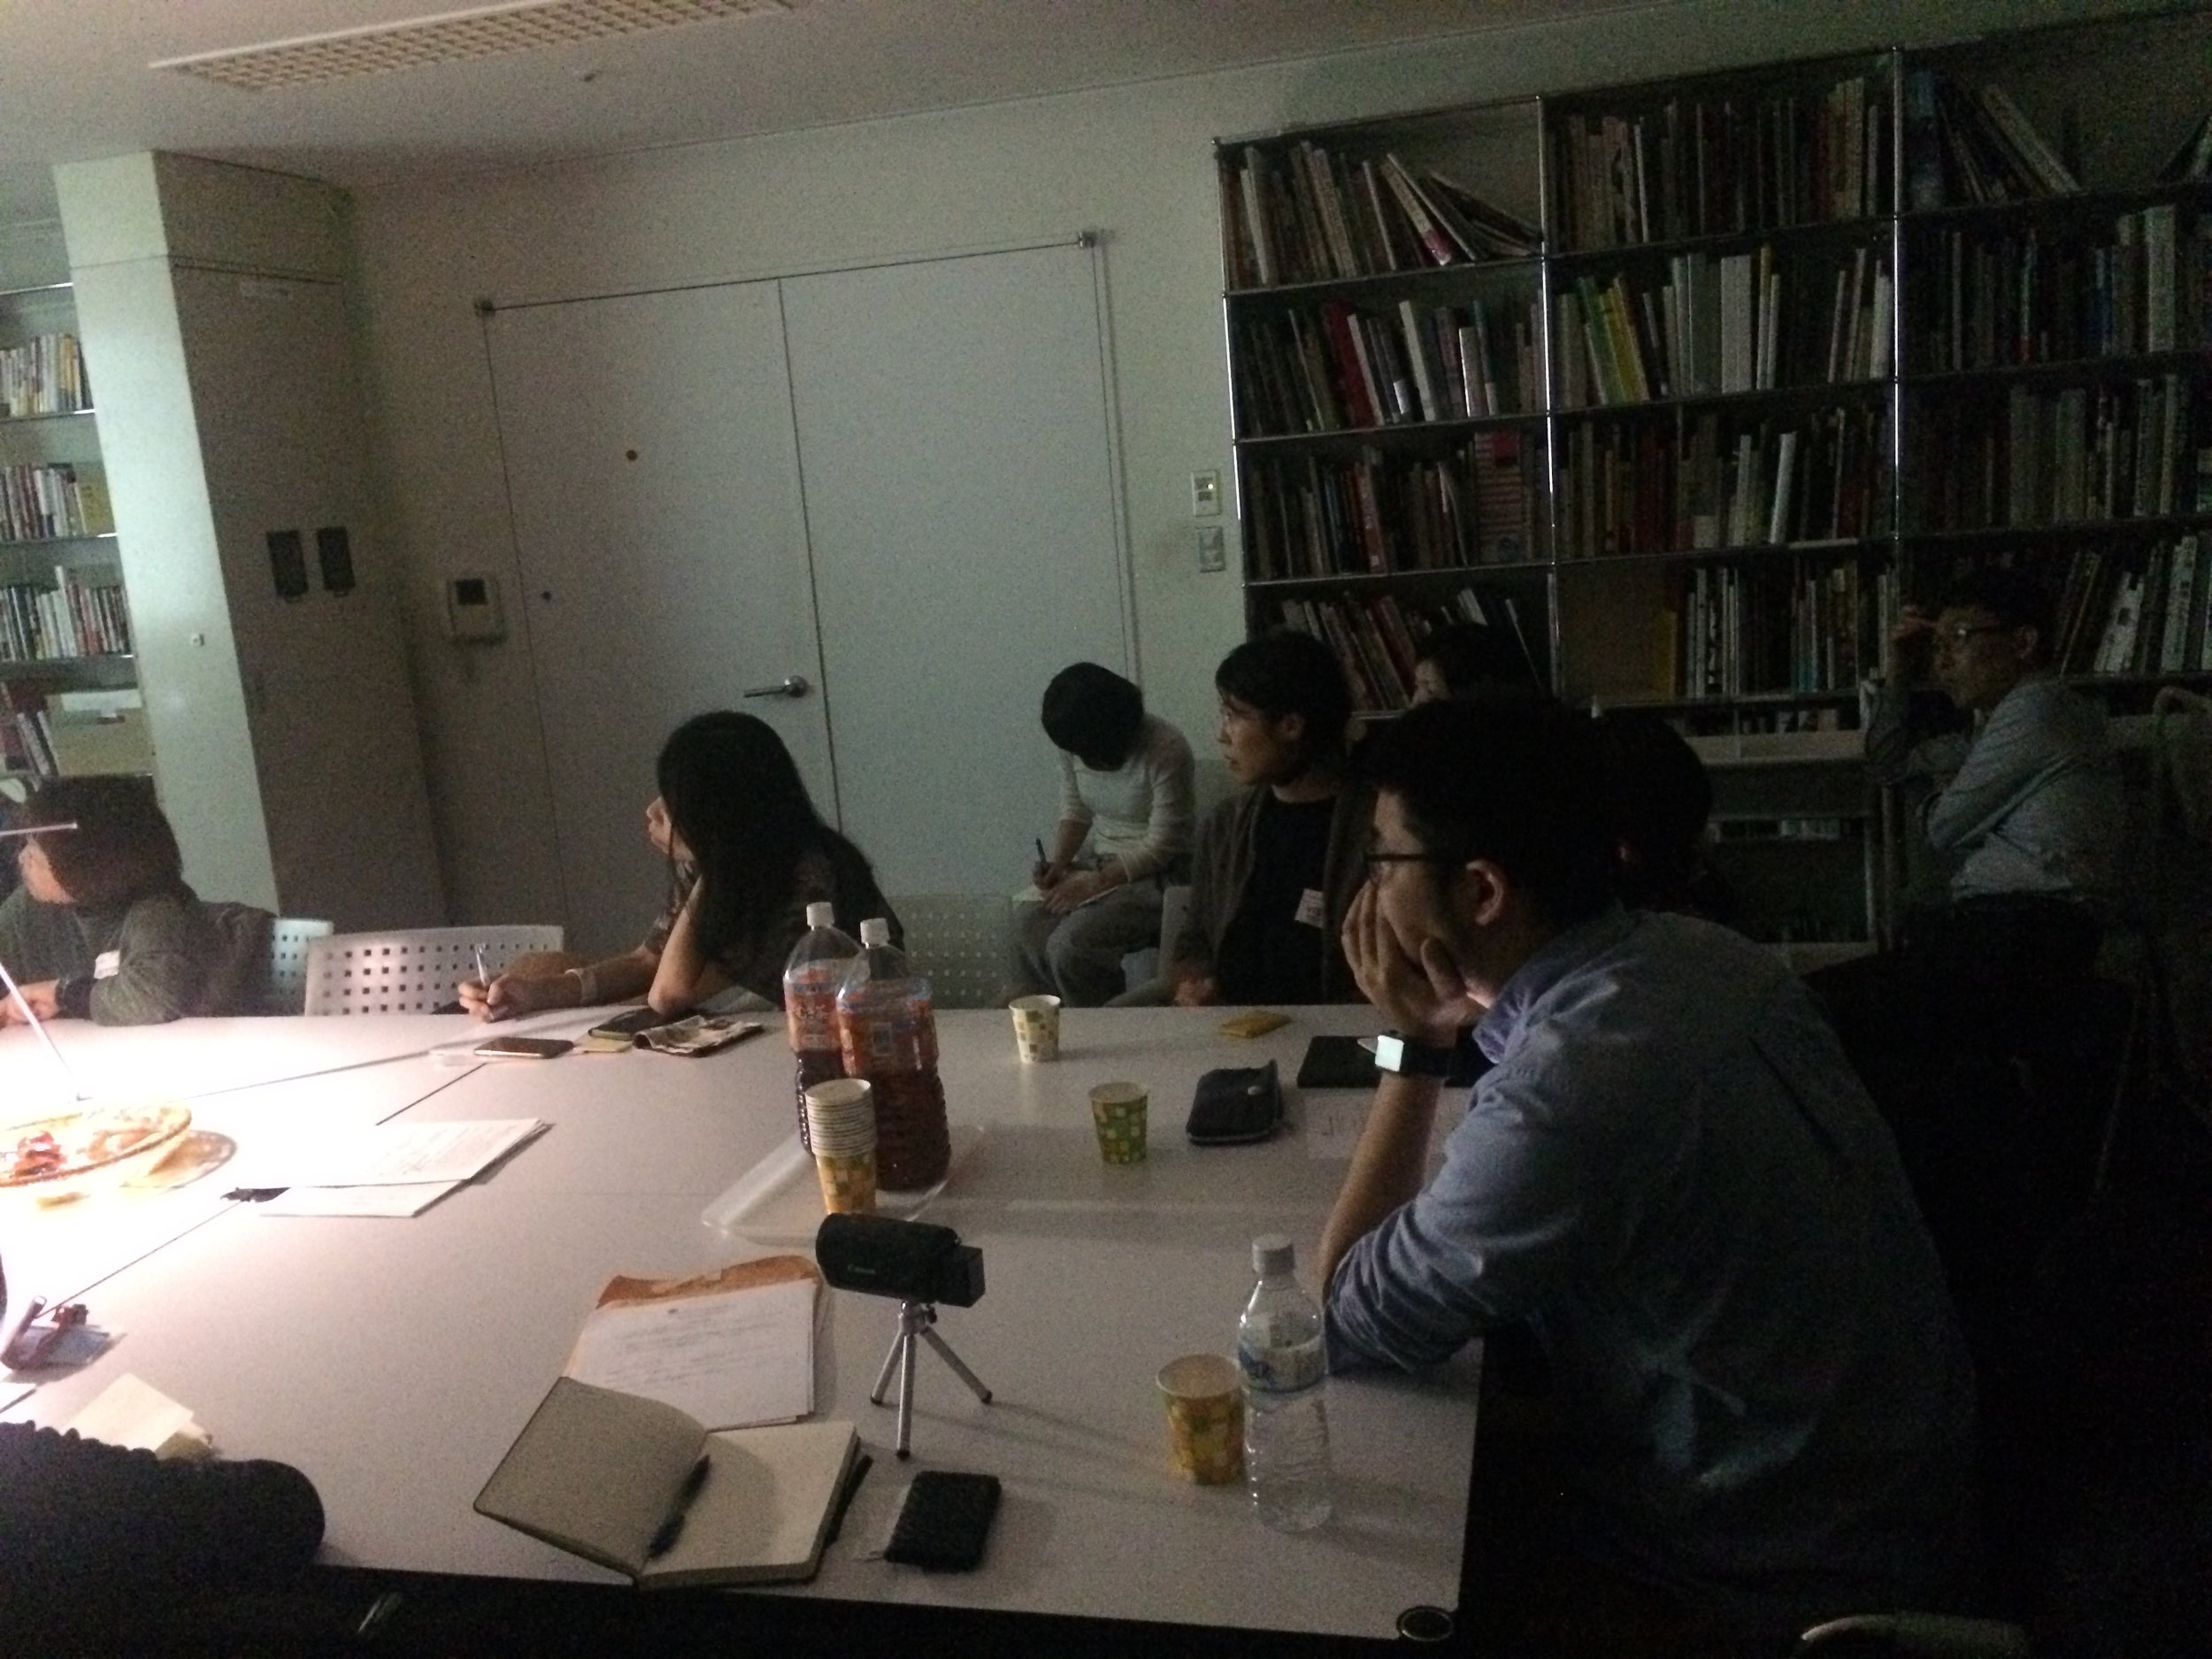 Workshop at Mori Art Museum